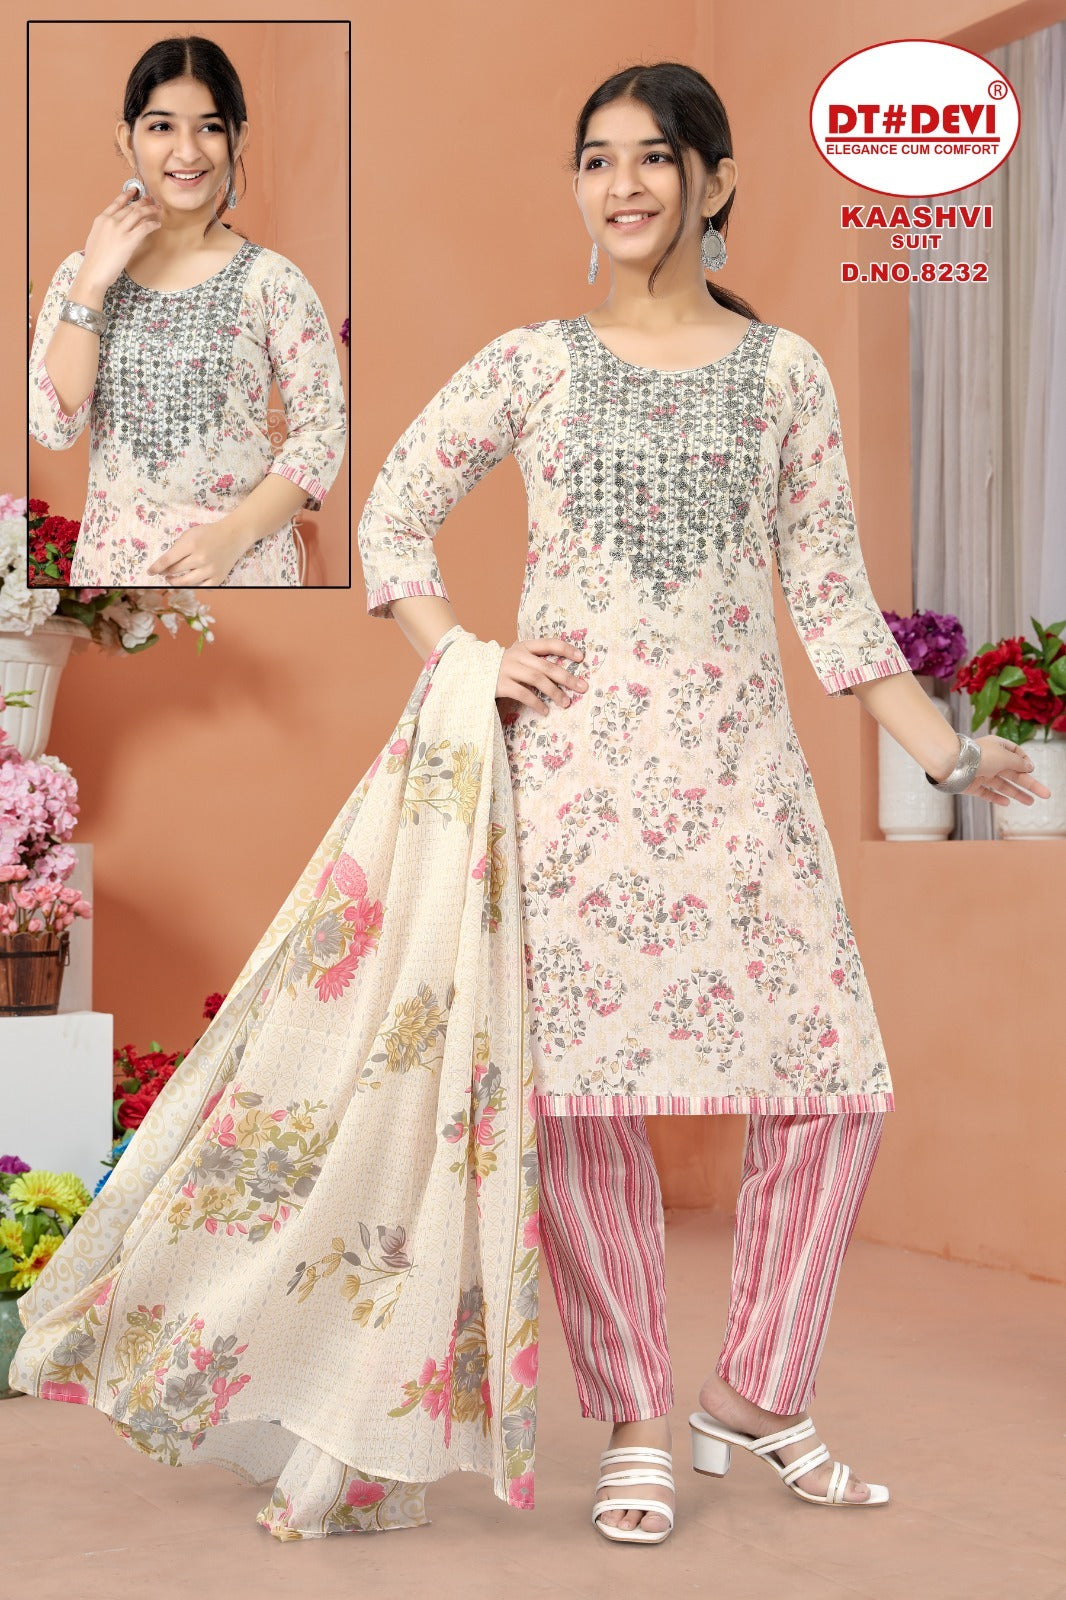 8232-Kaashvi Dt Devi Cotton  Readymade Pant Style Suits